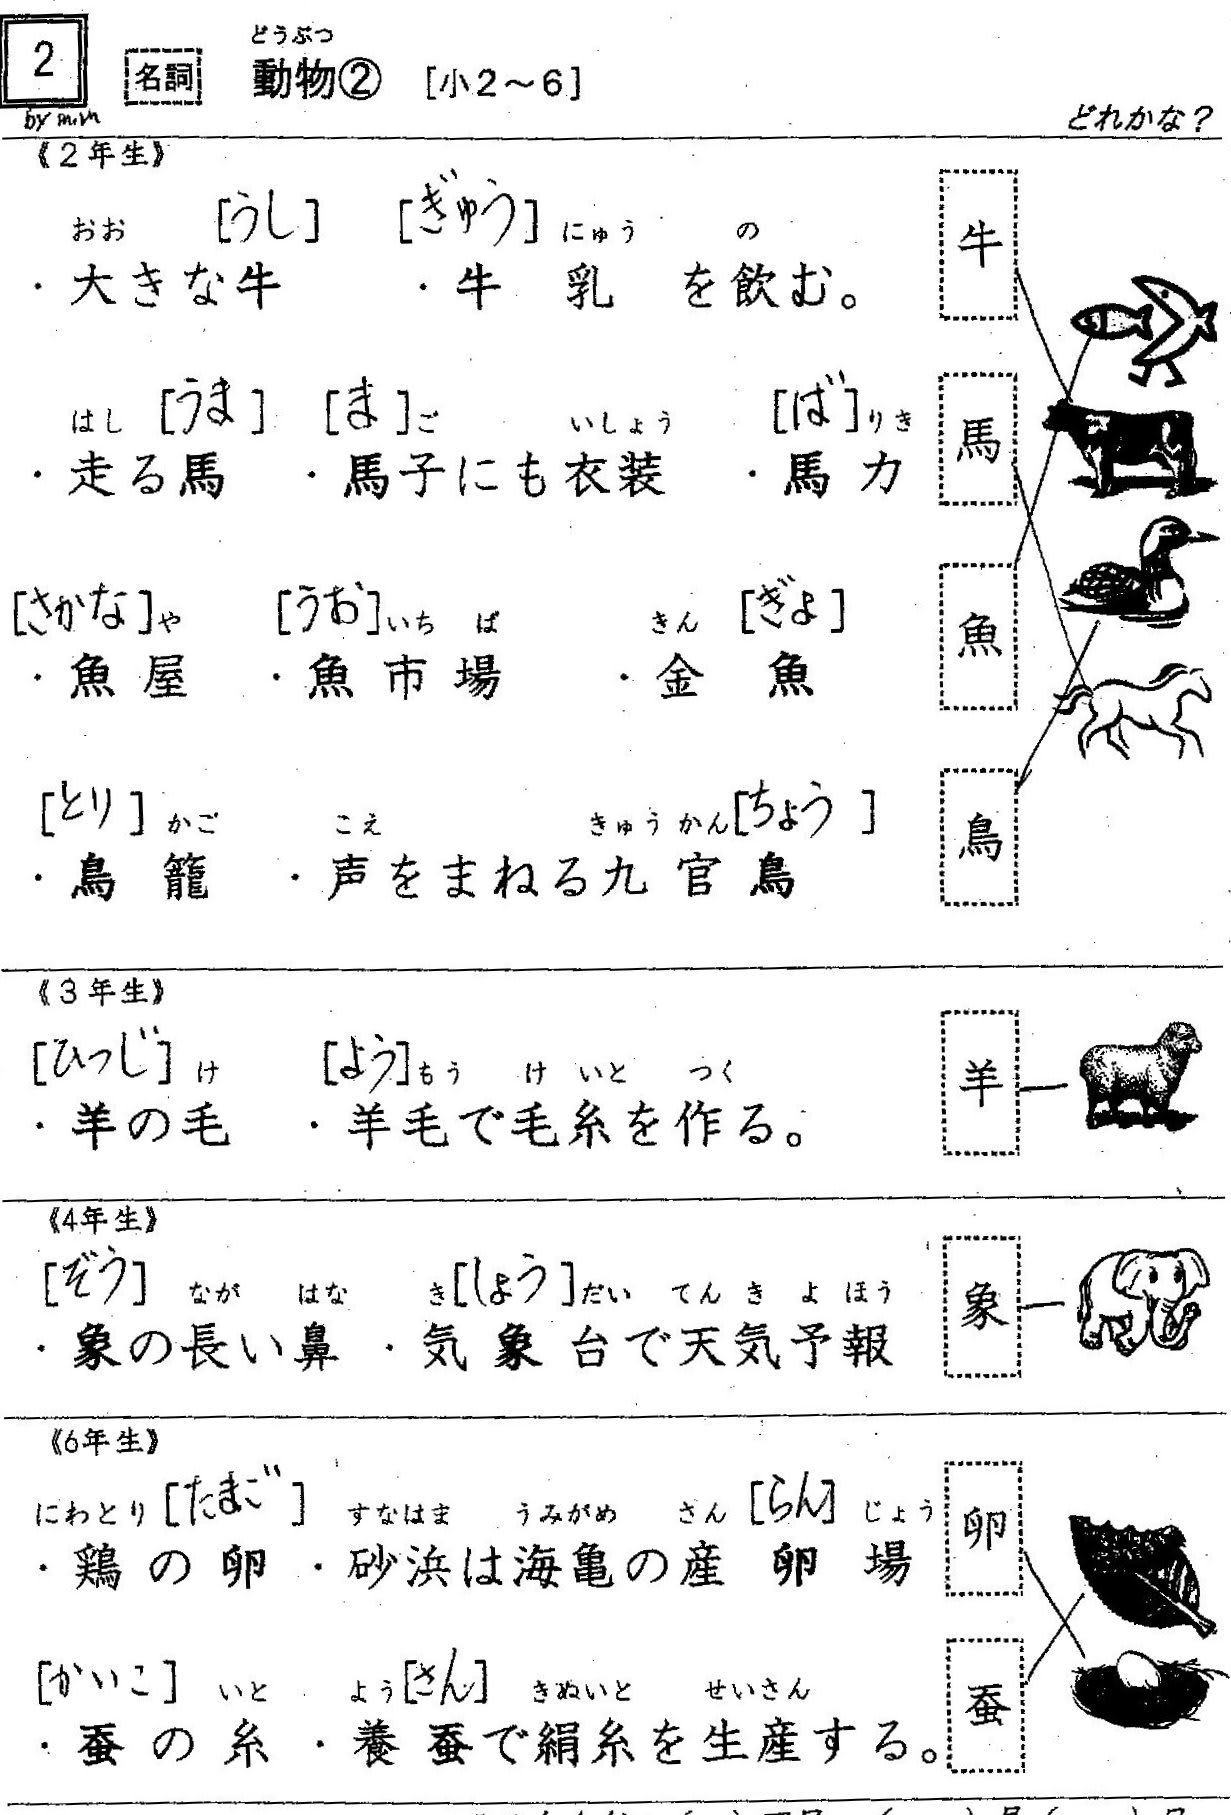 小学校漢字の読み 3 名詞 植物 １ ２年配当漢字 難しい読みが２